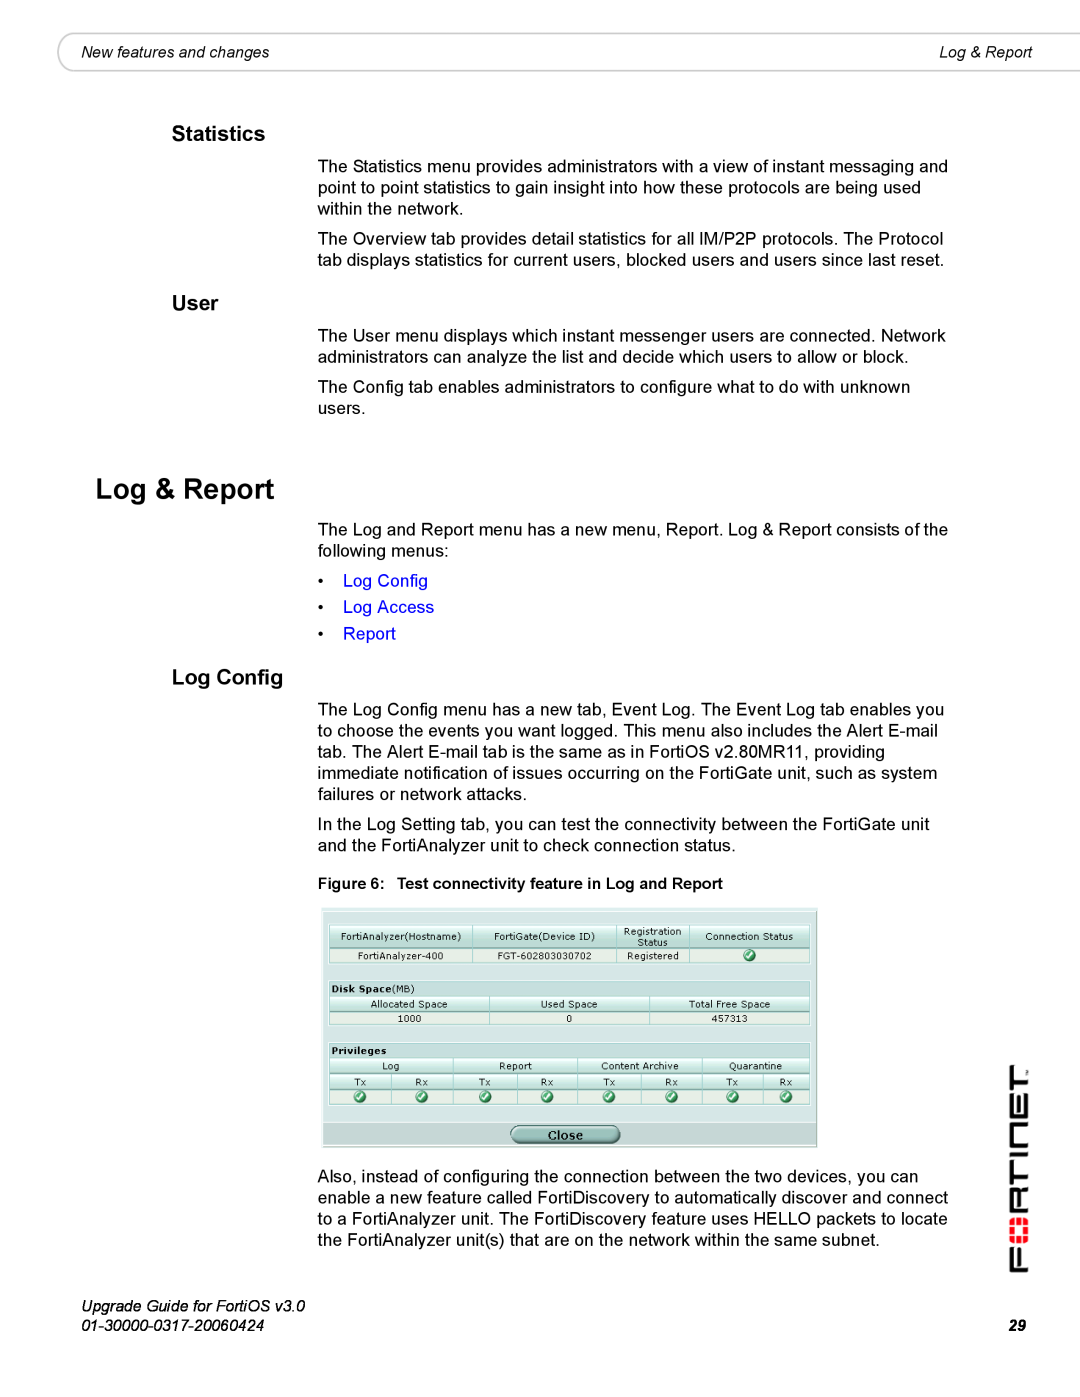 Fortinet FortiOS 3.0 manual Log & Report, Statistics, User, Log Config Log Access Report 